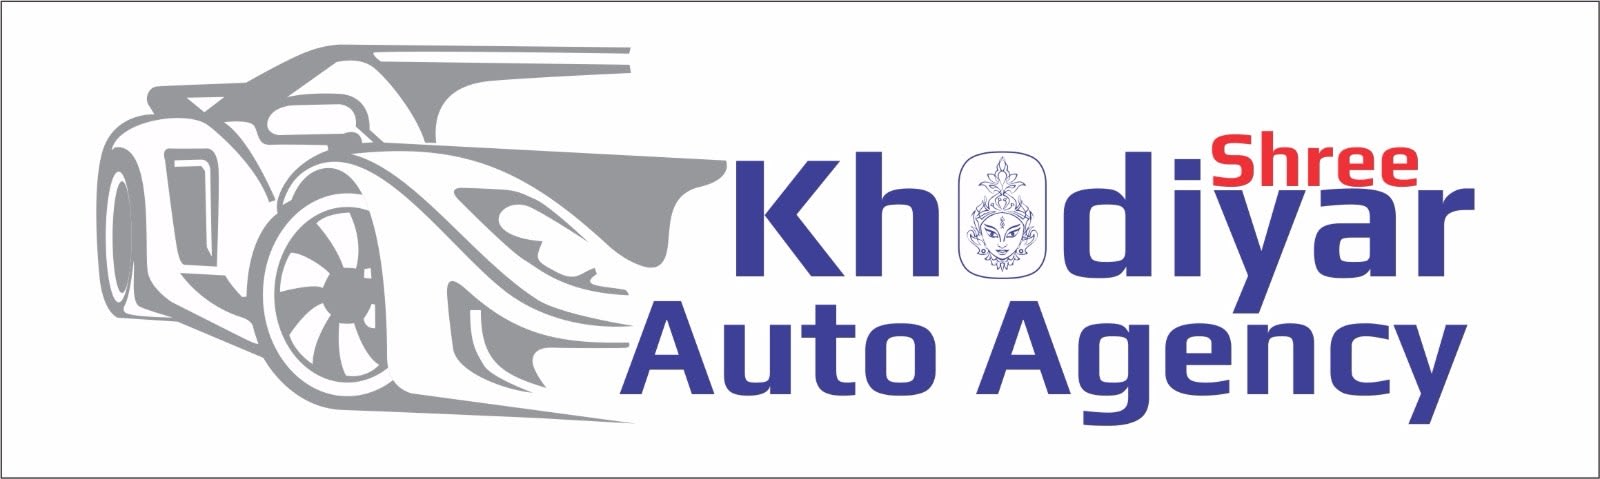 Shree Khodiyar Auto Agency